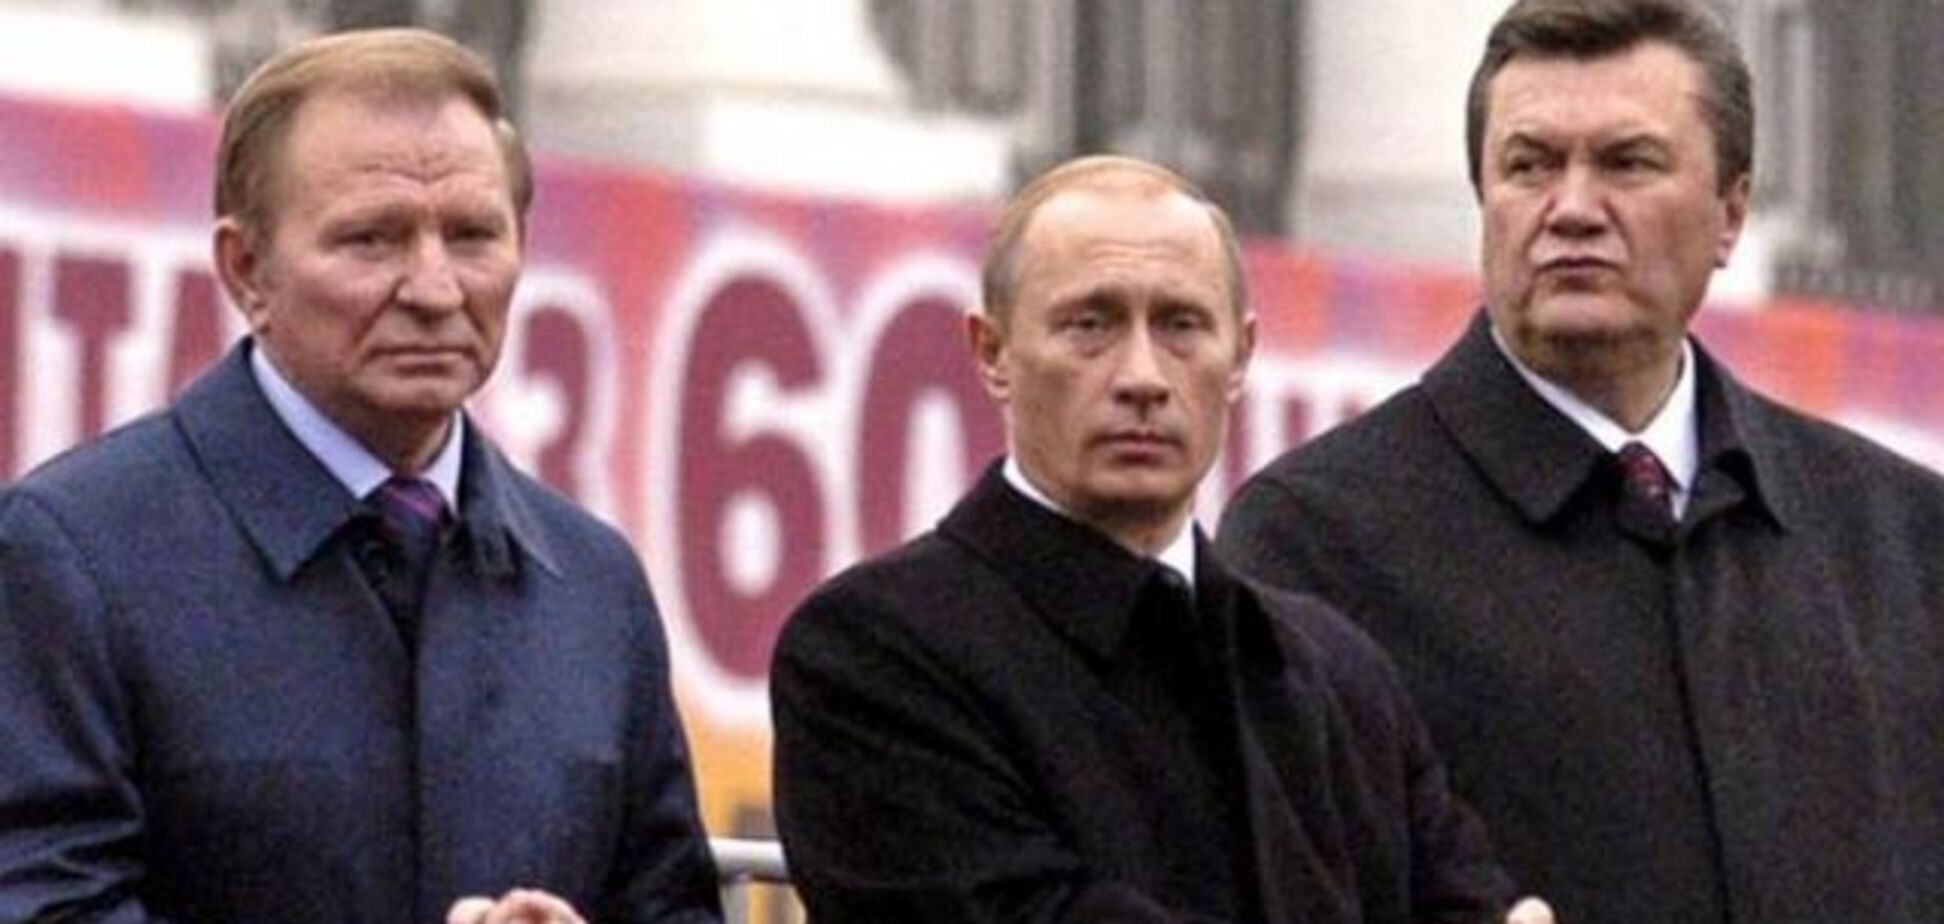 20 років тому Кучма породив Януковича